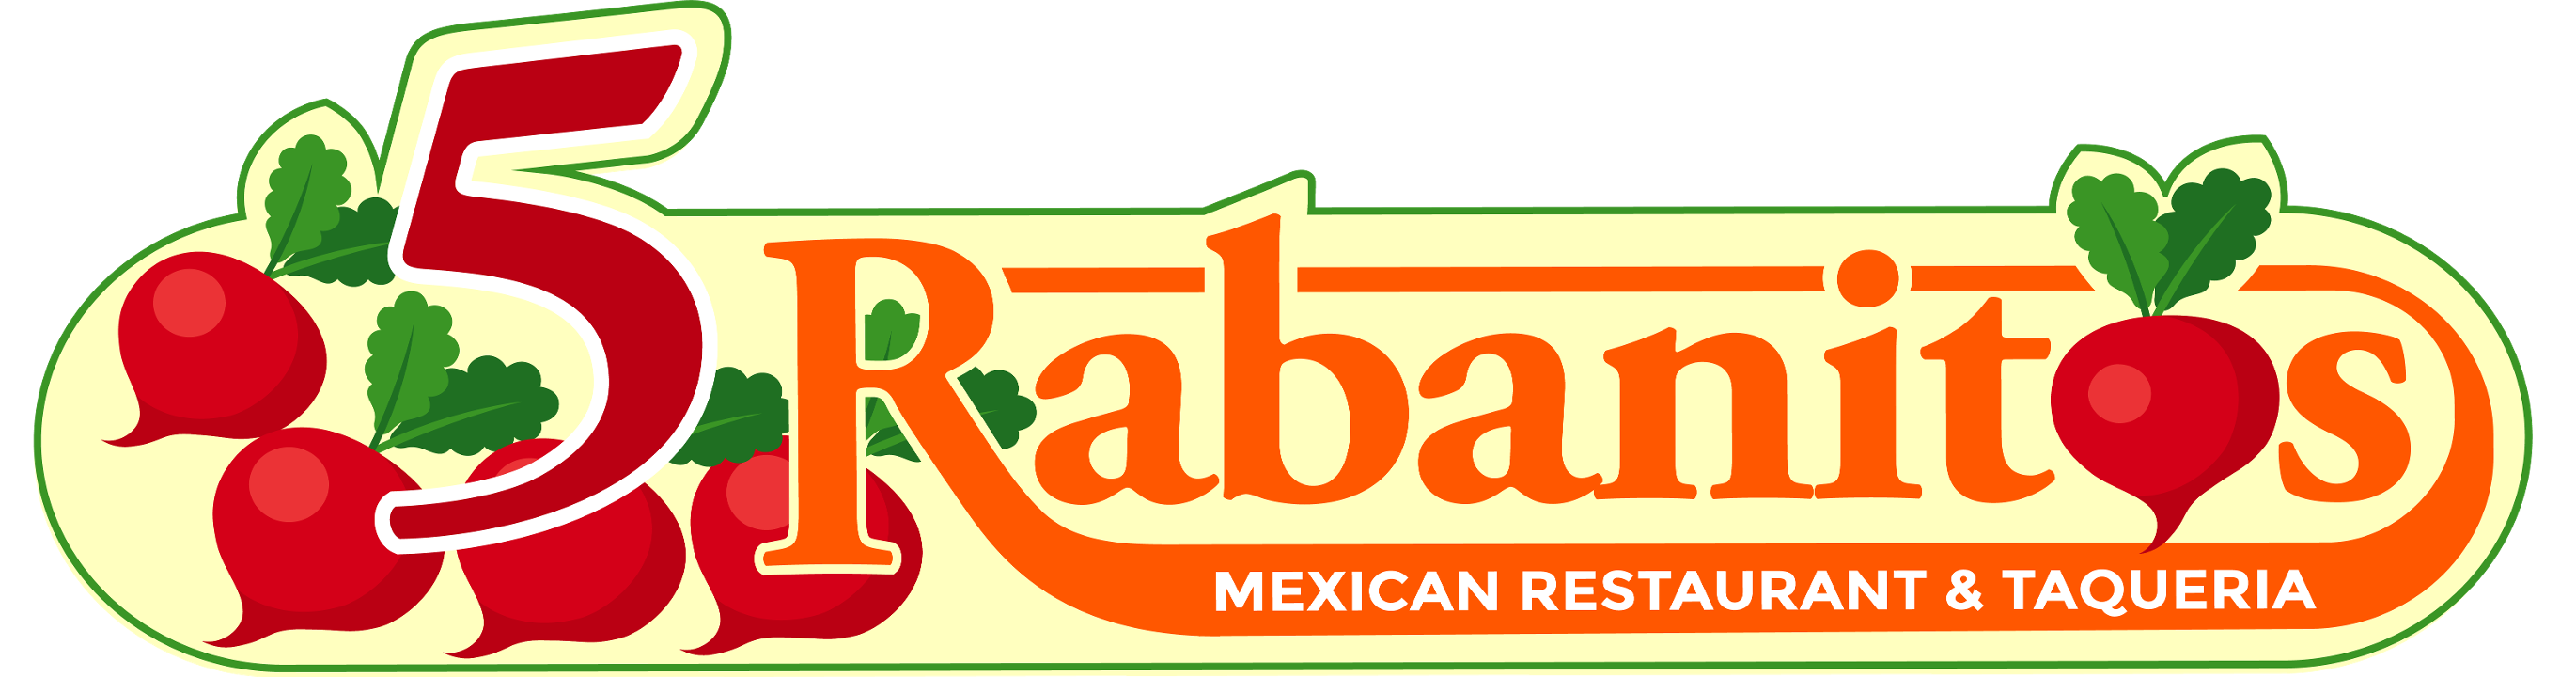 5 Rabanitos Restaurante and Taqueria